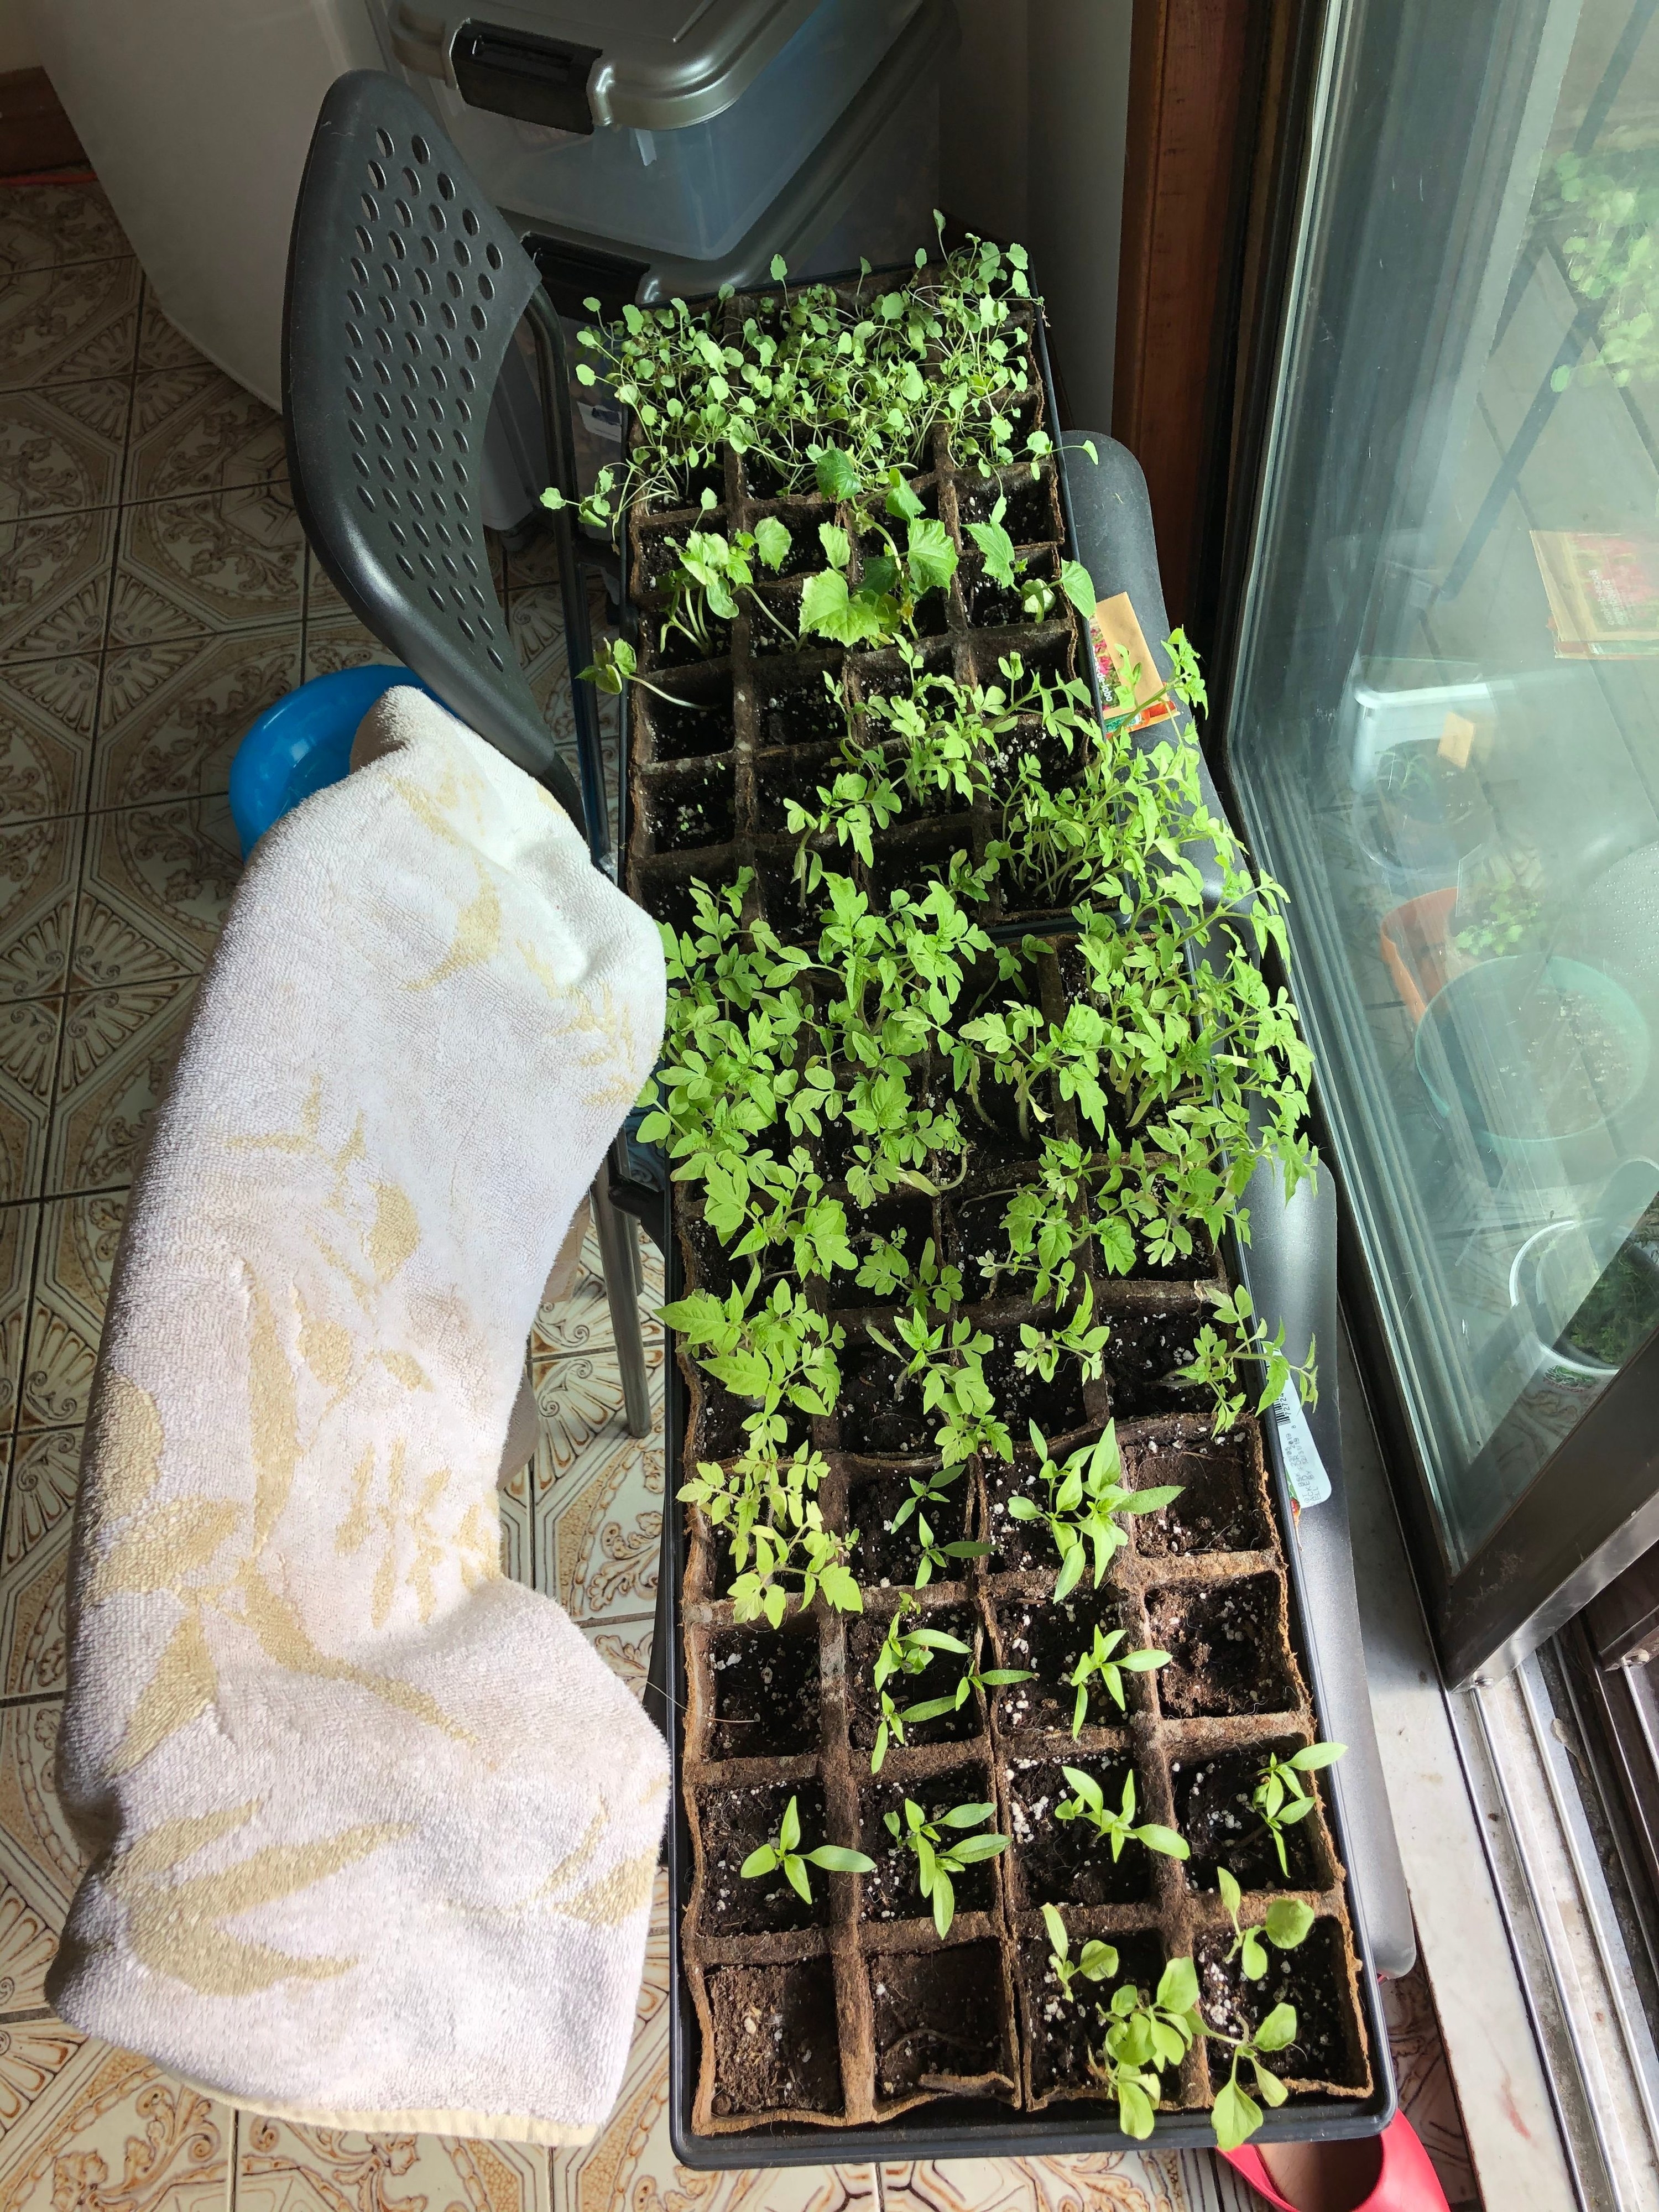 Tomato seedlings growing indoors